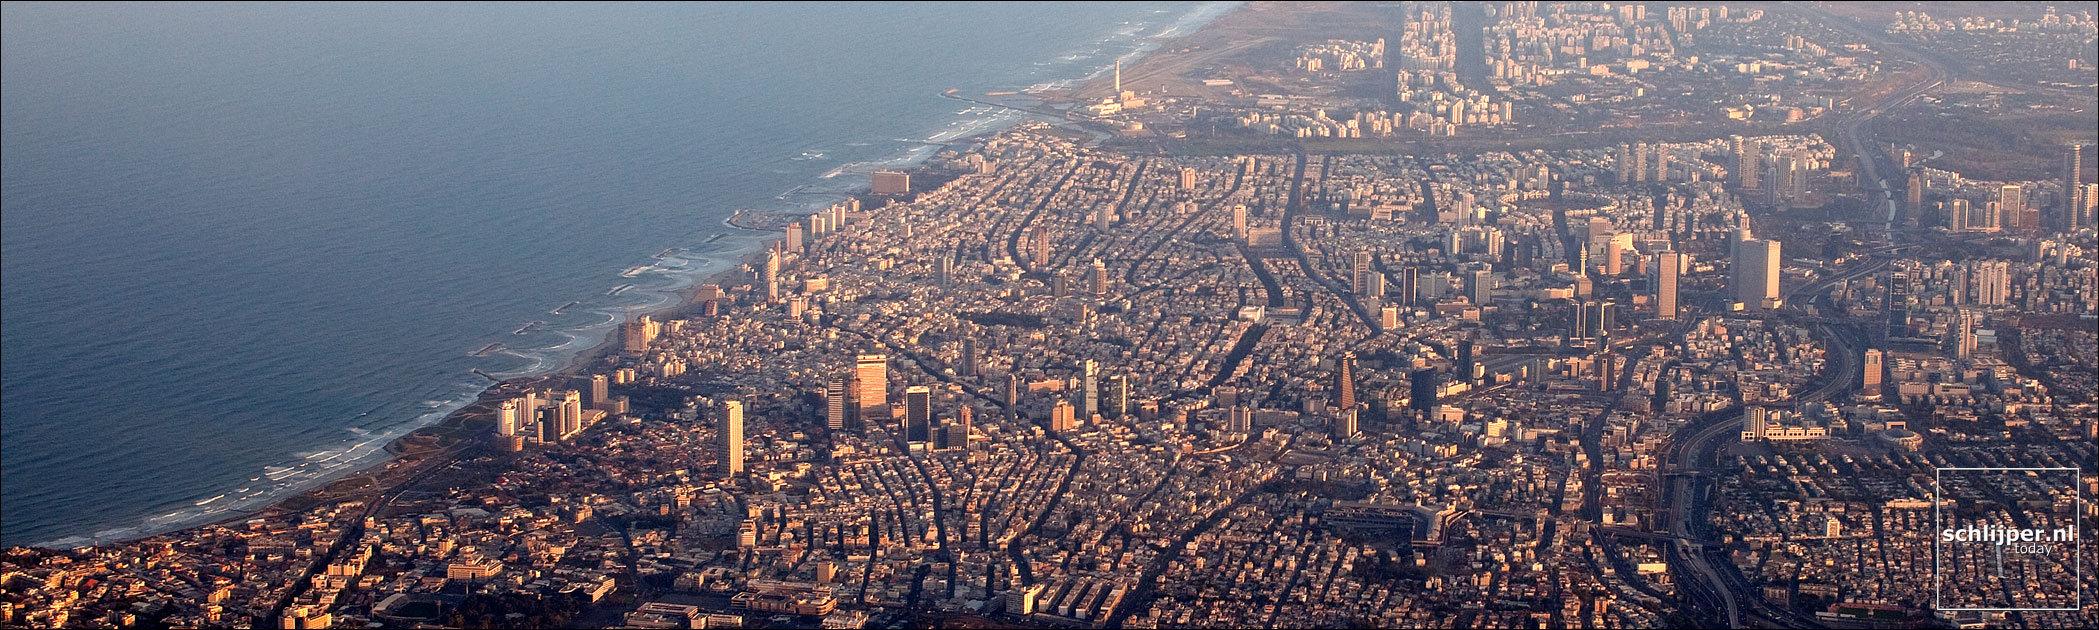 Israel, Tel Aviv, 7 december 2010